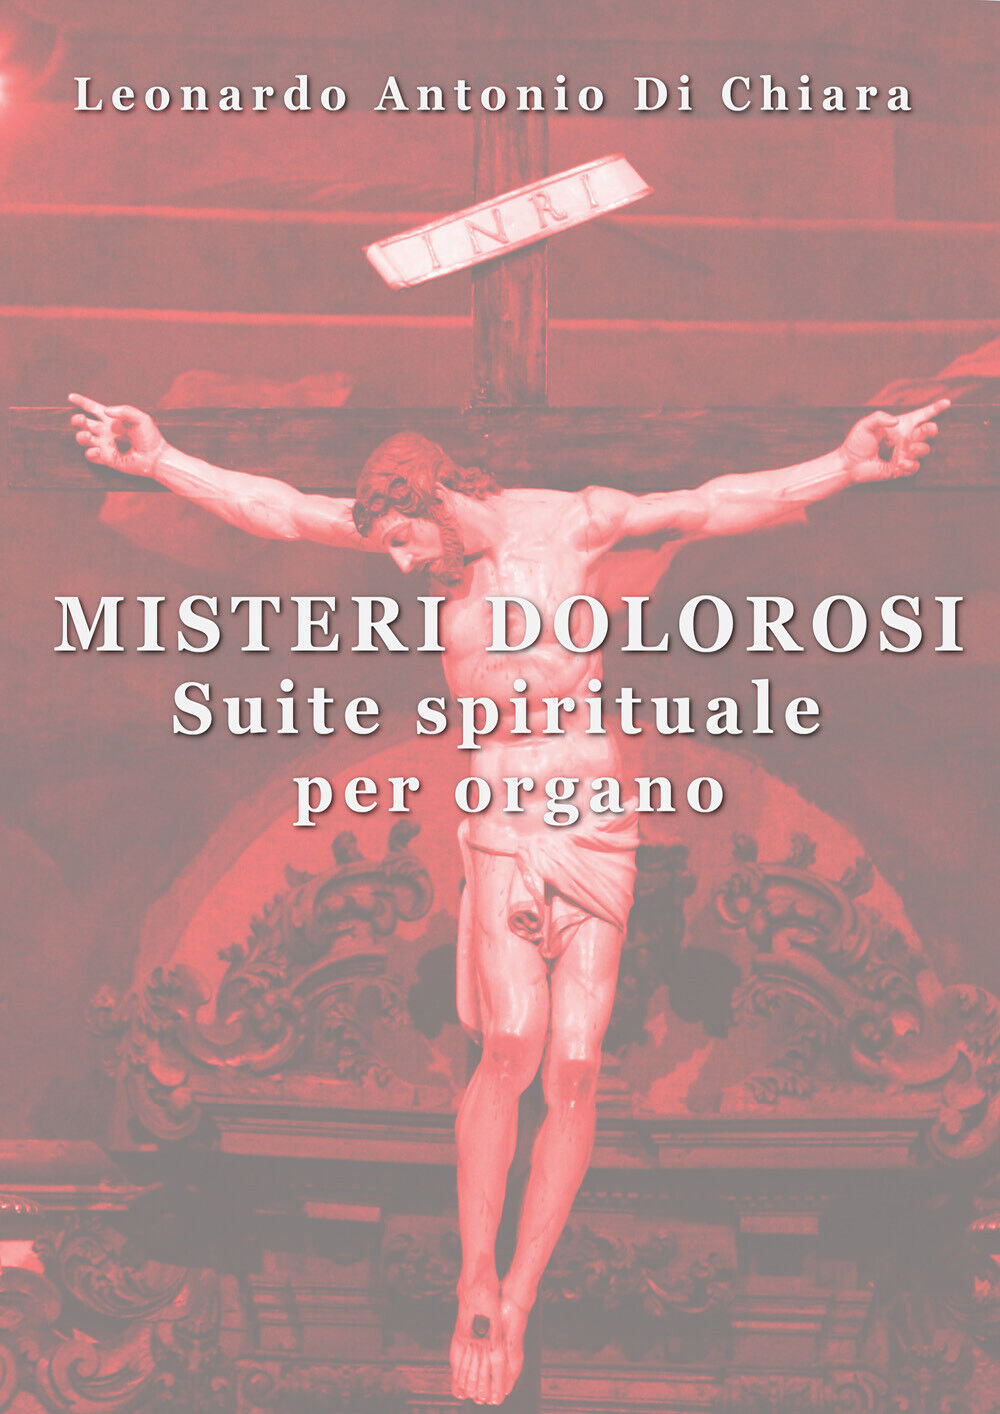 Misteri dolorosi Suite spirituale per organo di Leonardo Antonio Di Chiara,  202 libro usato